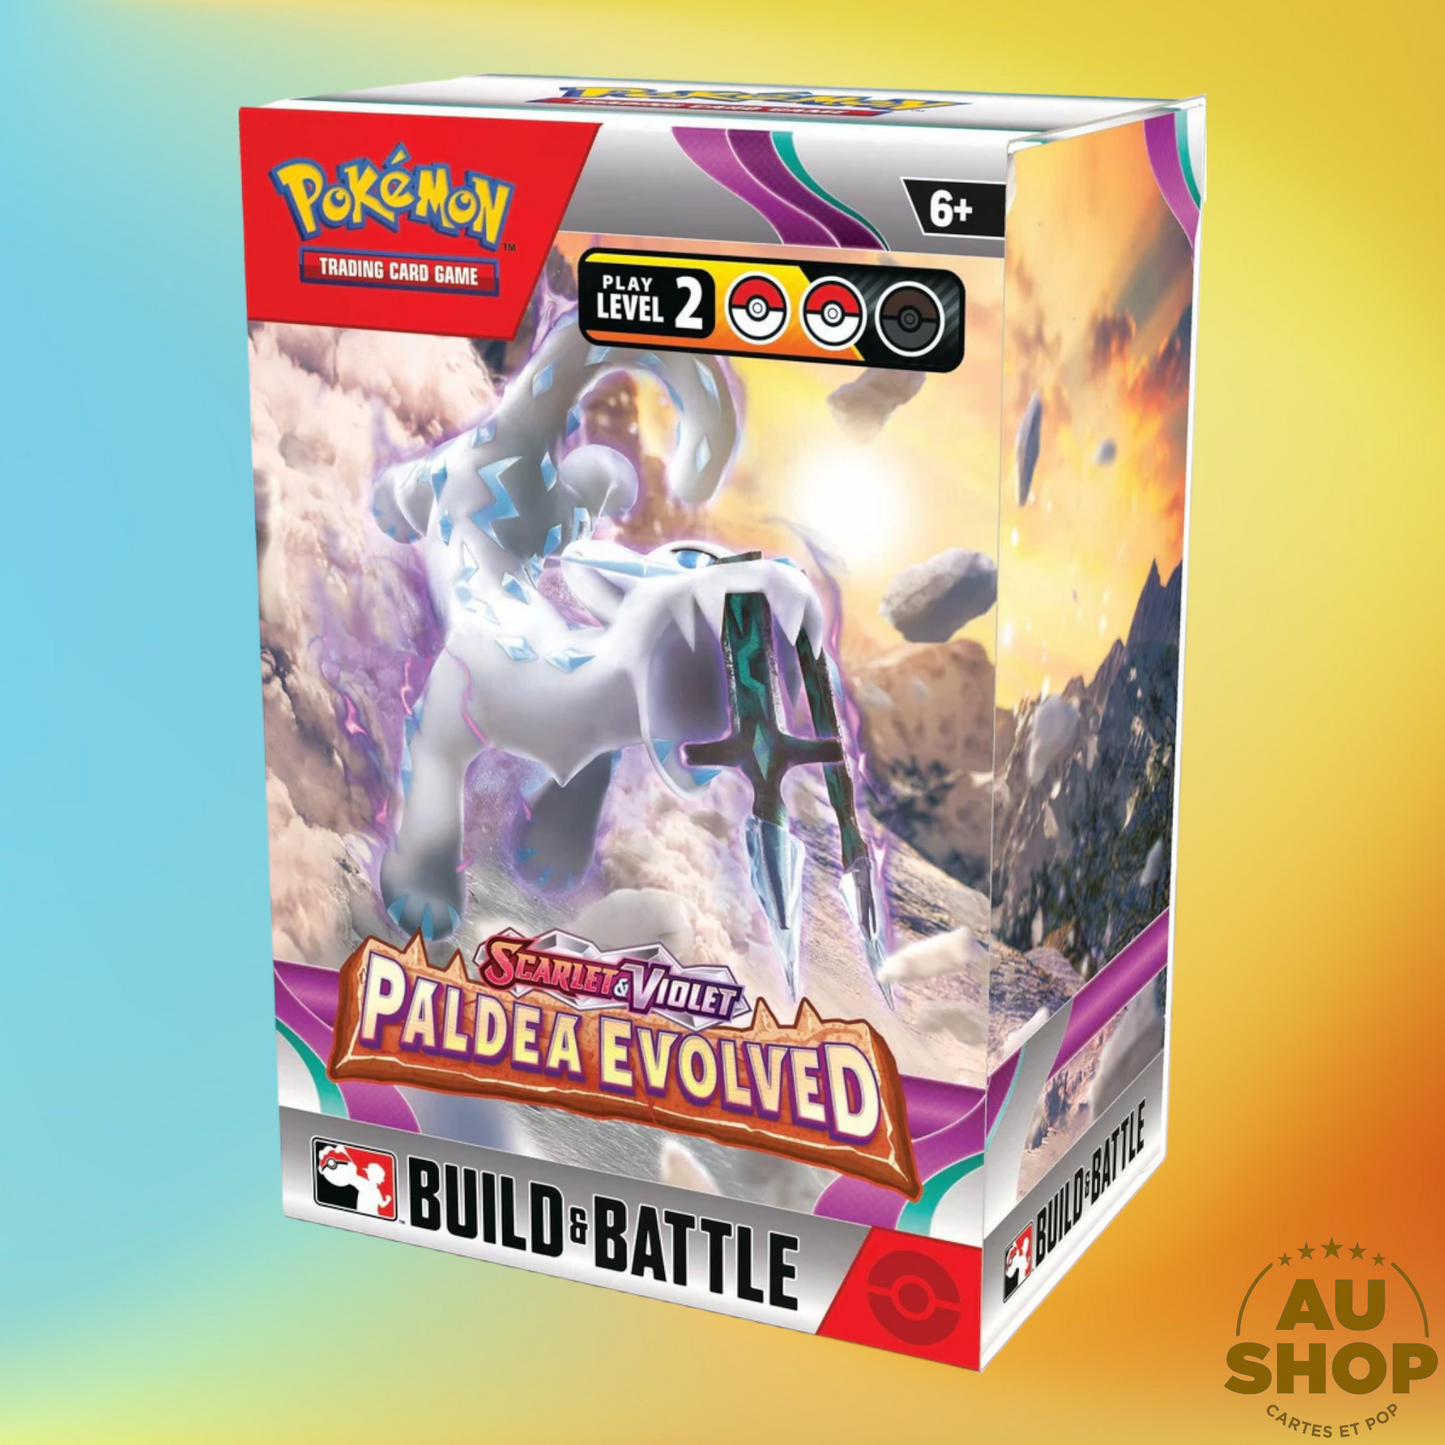 Pokemon Scarlet & Violet Paldea Evolved Build & Battle Boîte